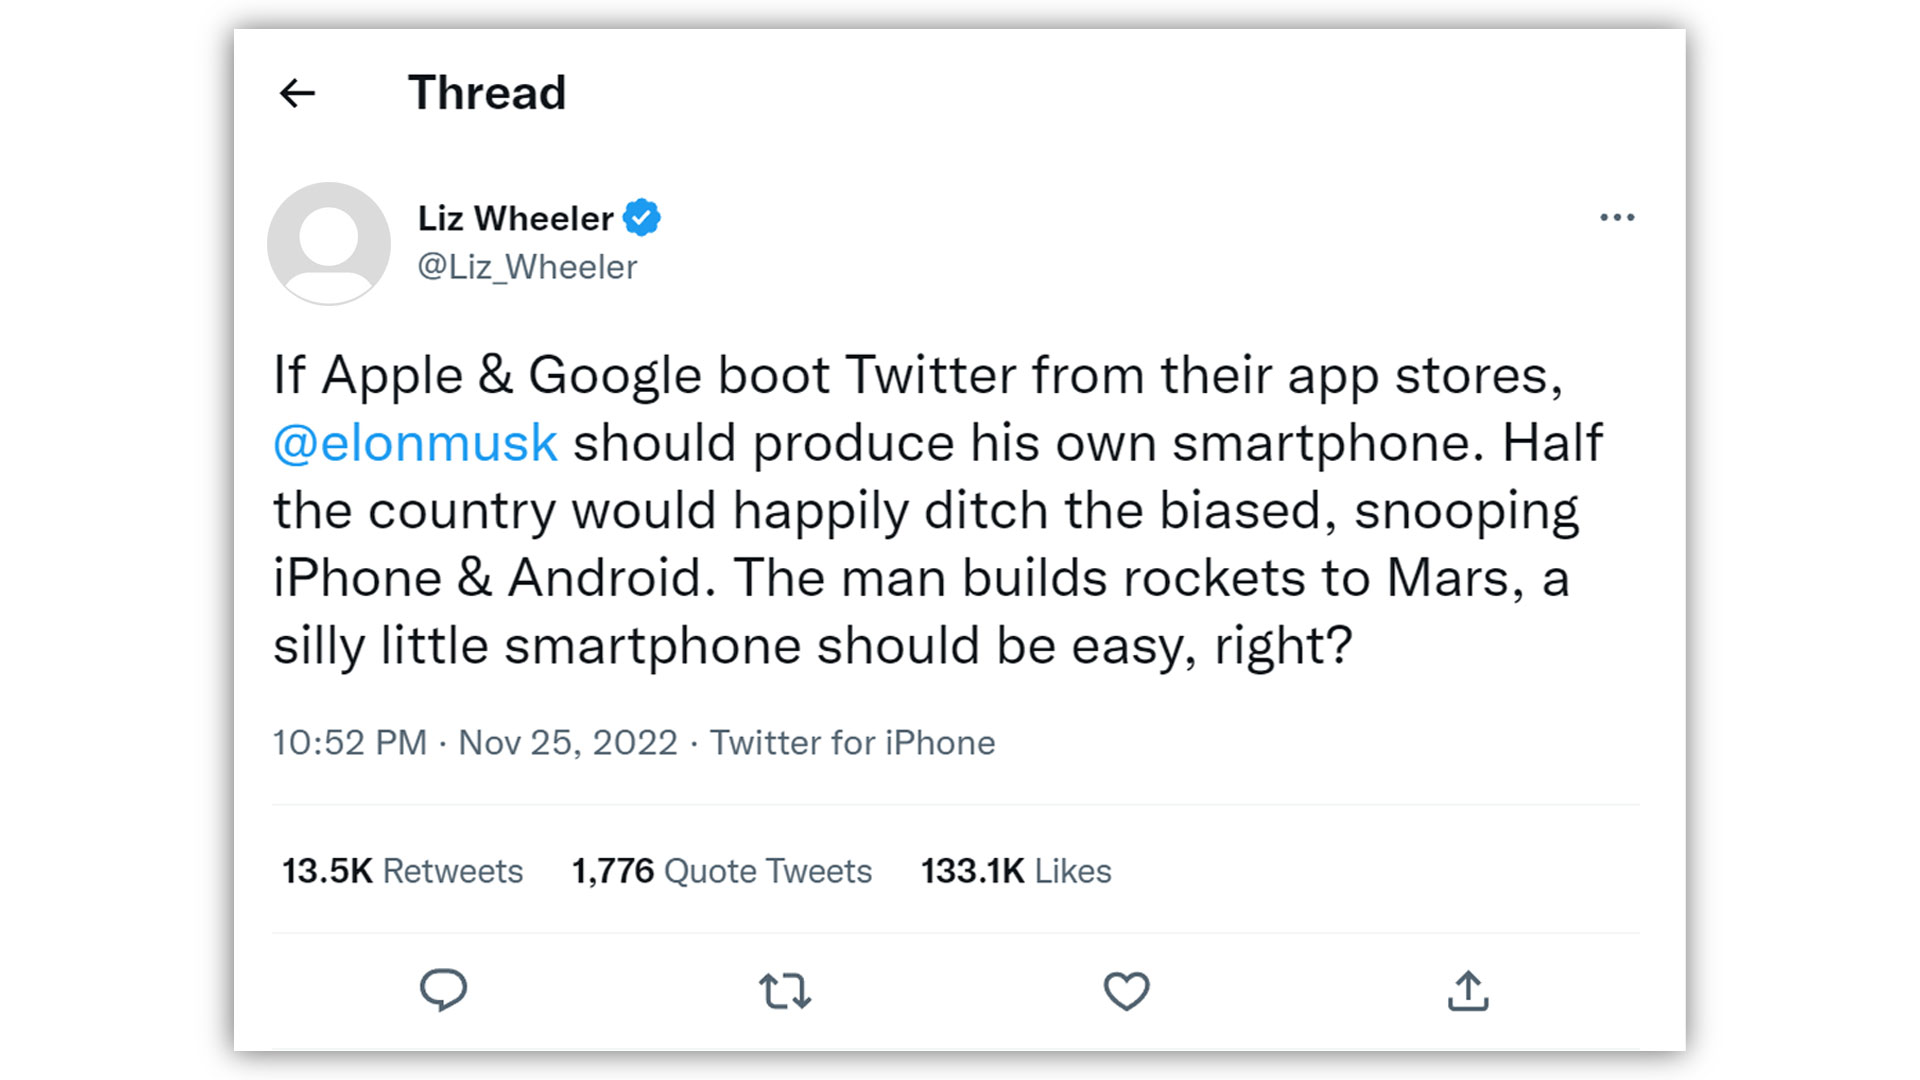 liz-wheeler-tweet-about-elon-musk-making-smartphone